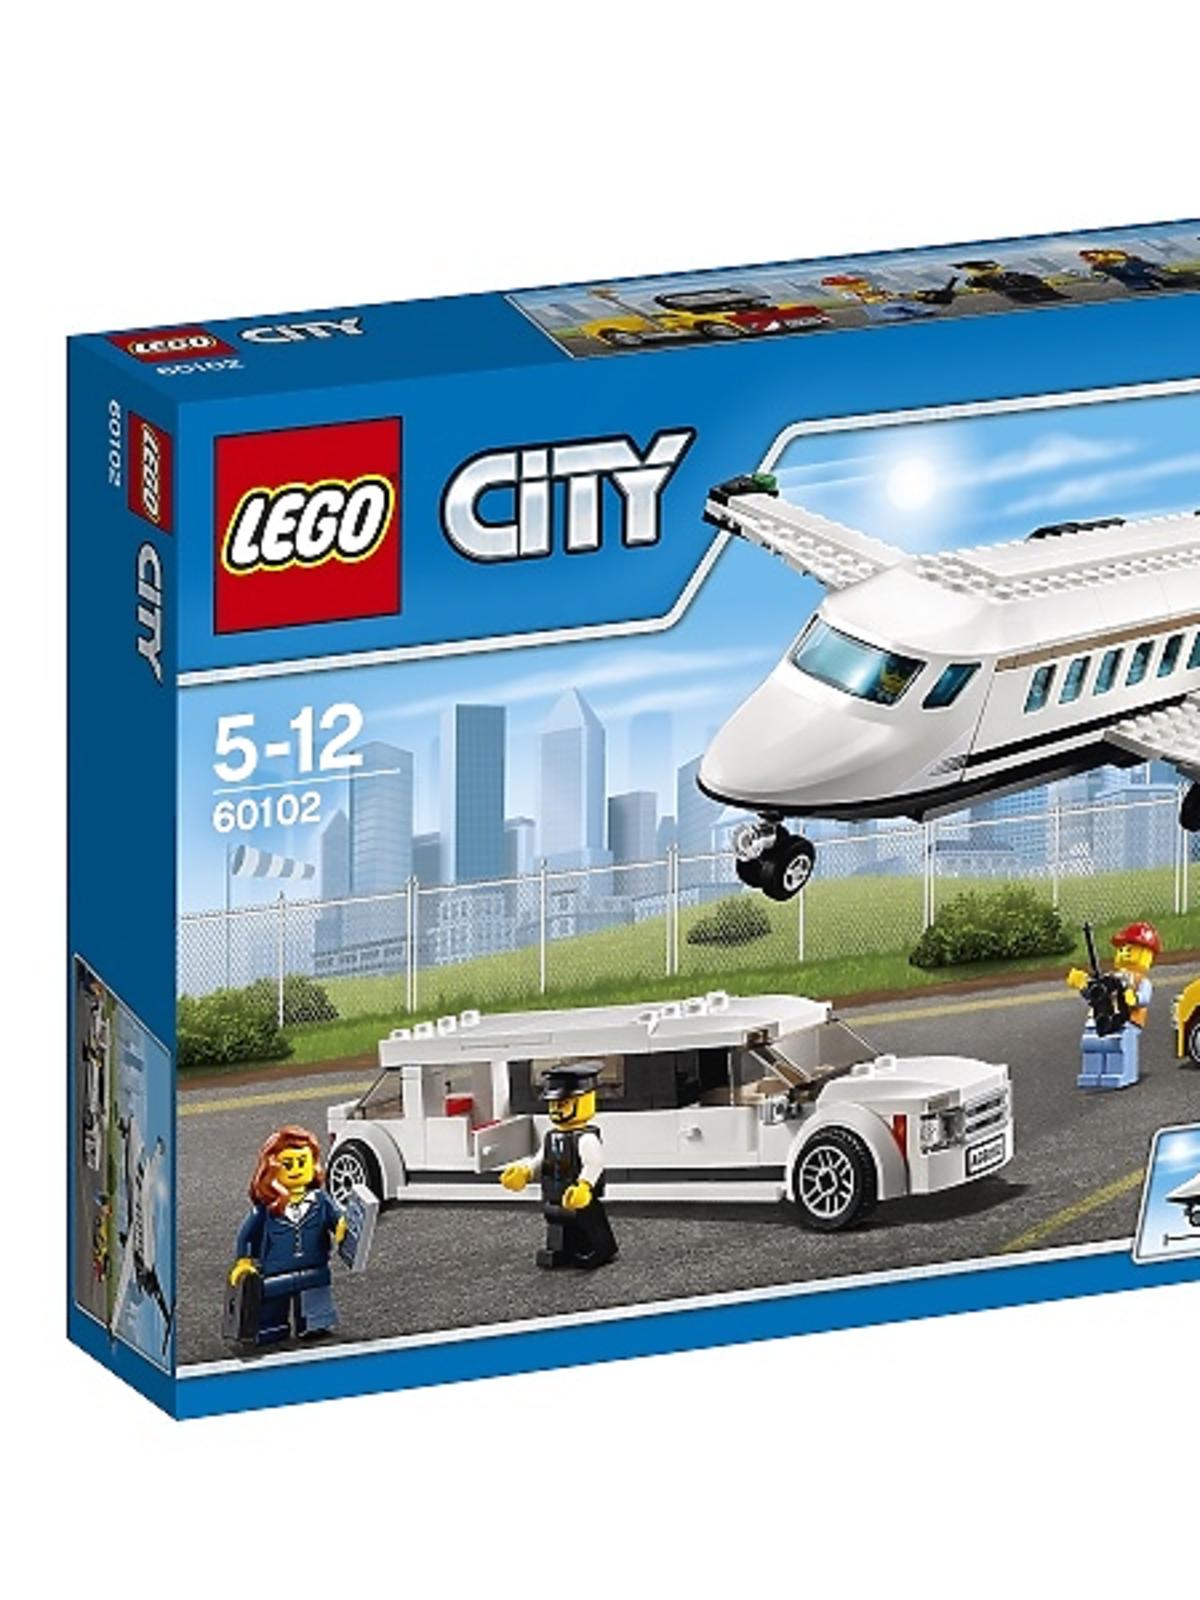 Lego City Lotnisko obsługa VIPów 60102 - katalog produktów dla dzieci na Babyonline.pl